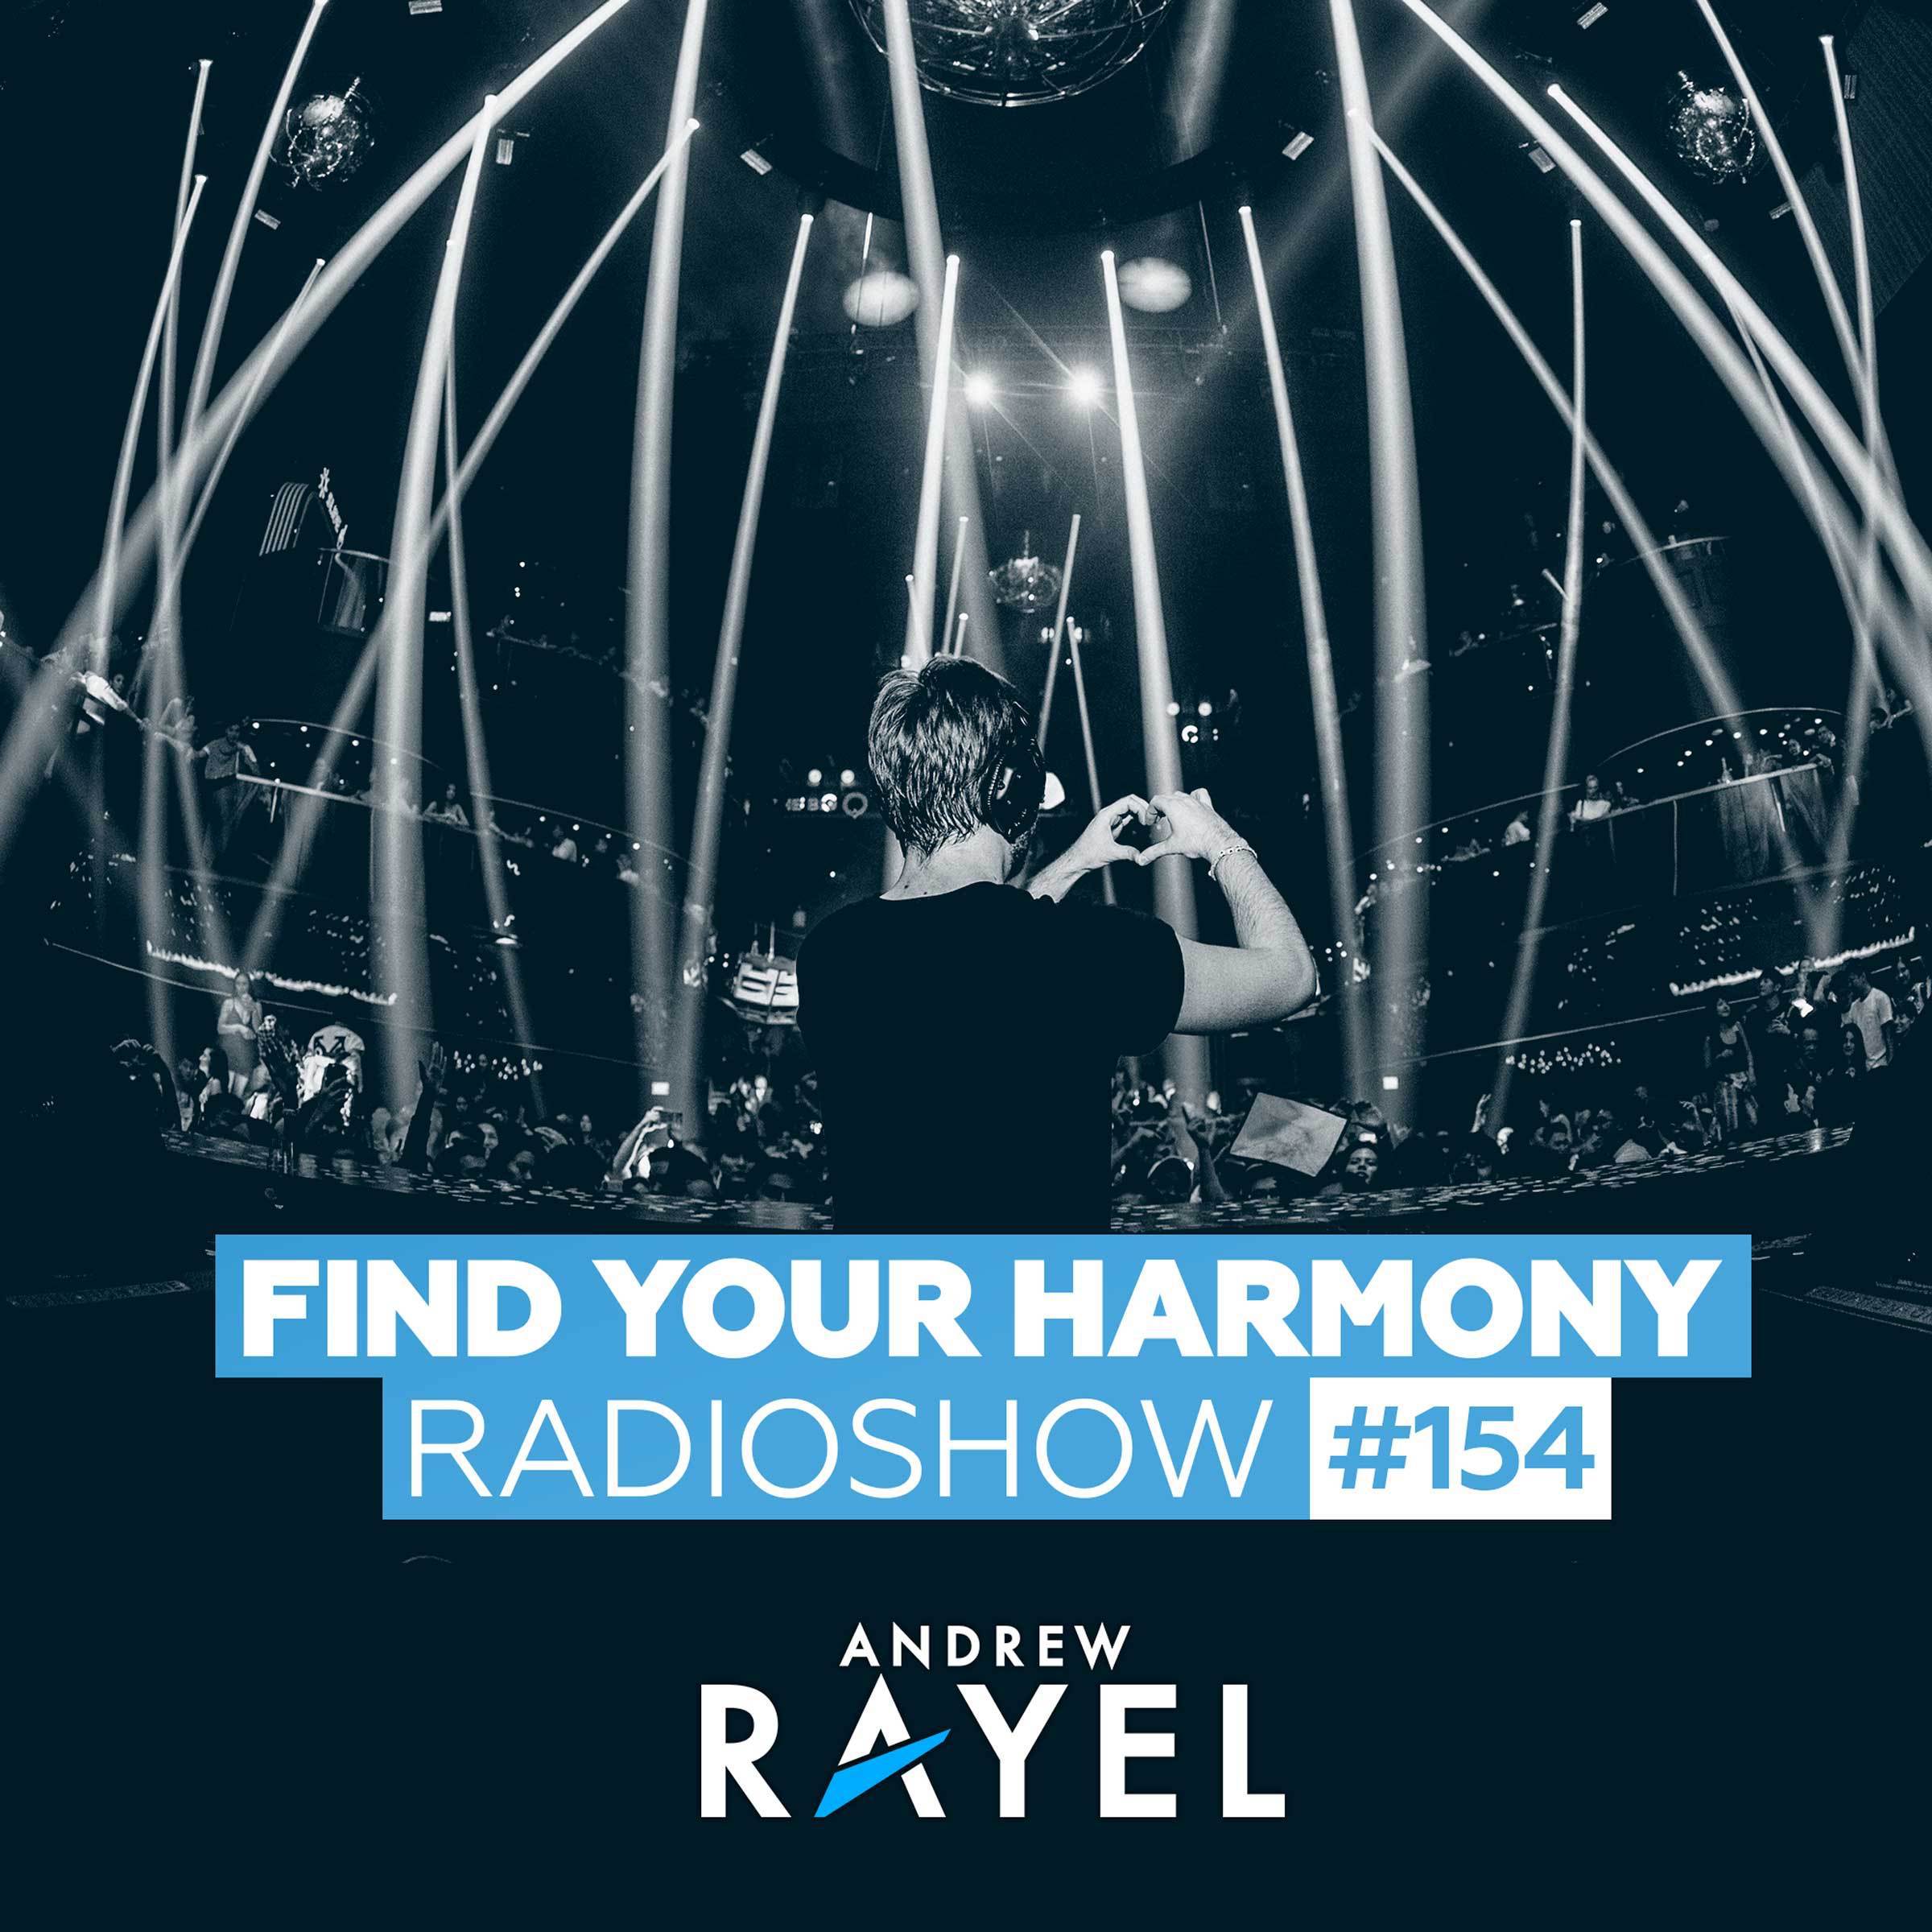 Find Your Harmony Radioshow #154专辑